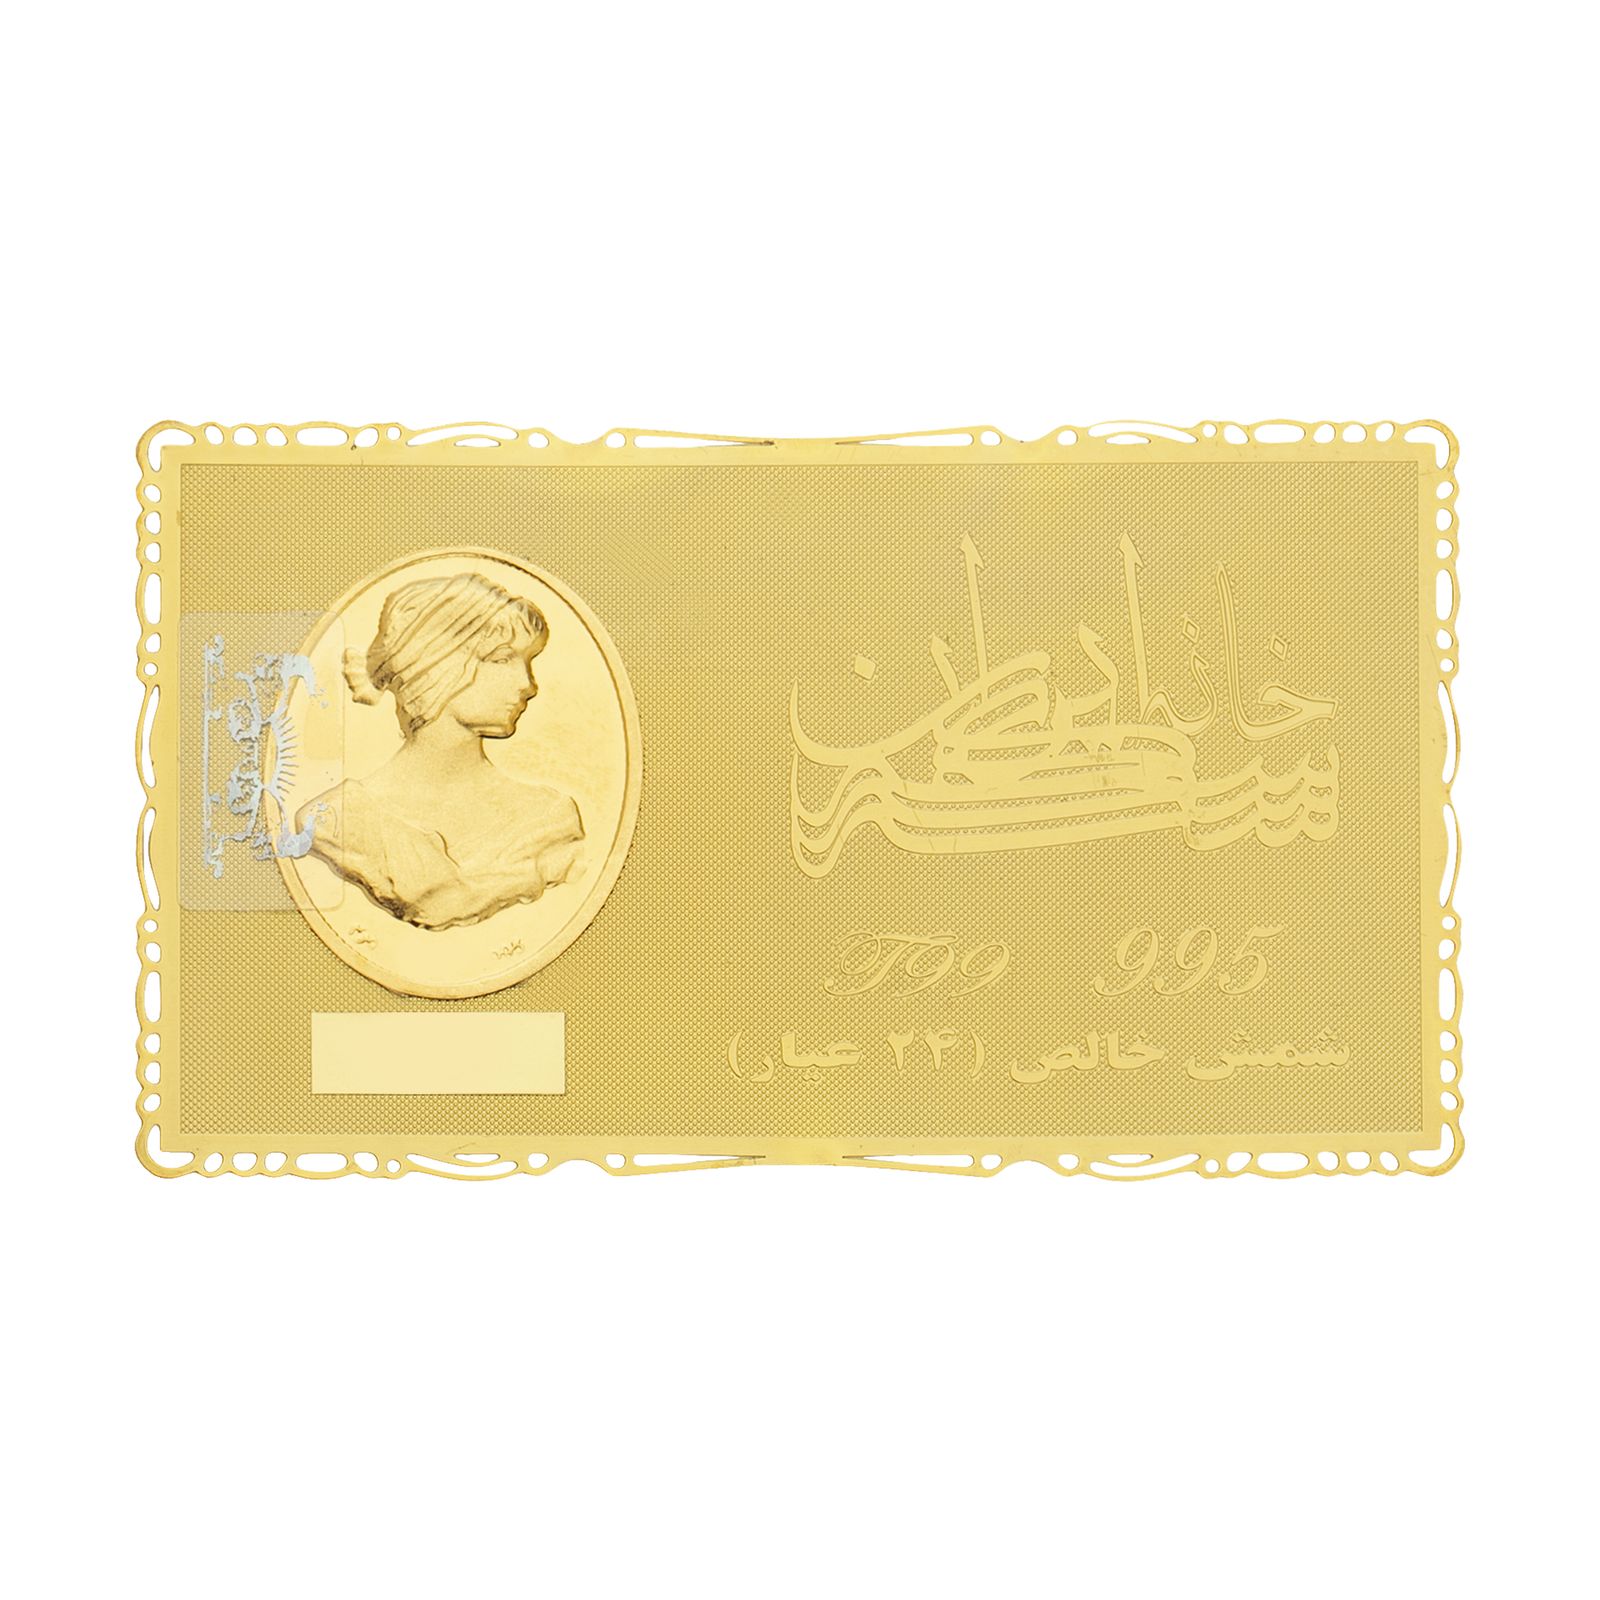 طلا گرمی 24 عیار خانه سکه ایران کد 007 -  - 1